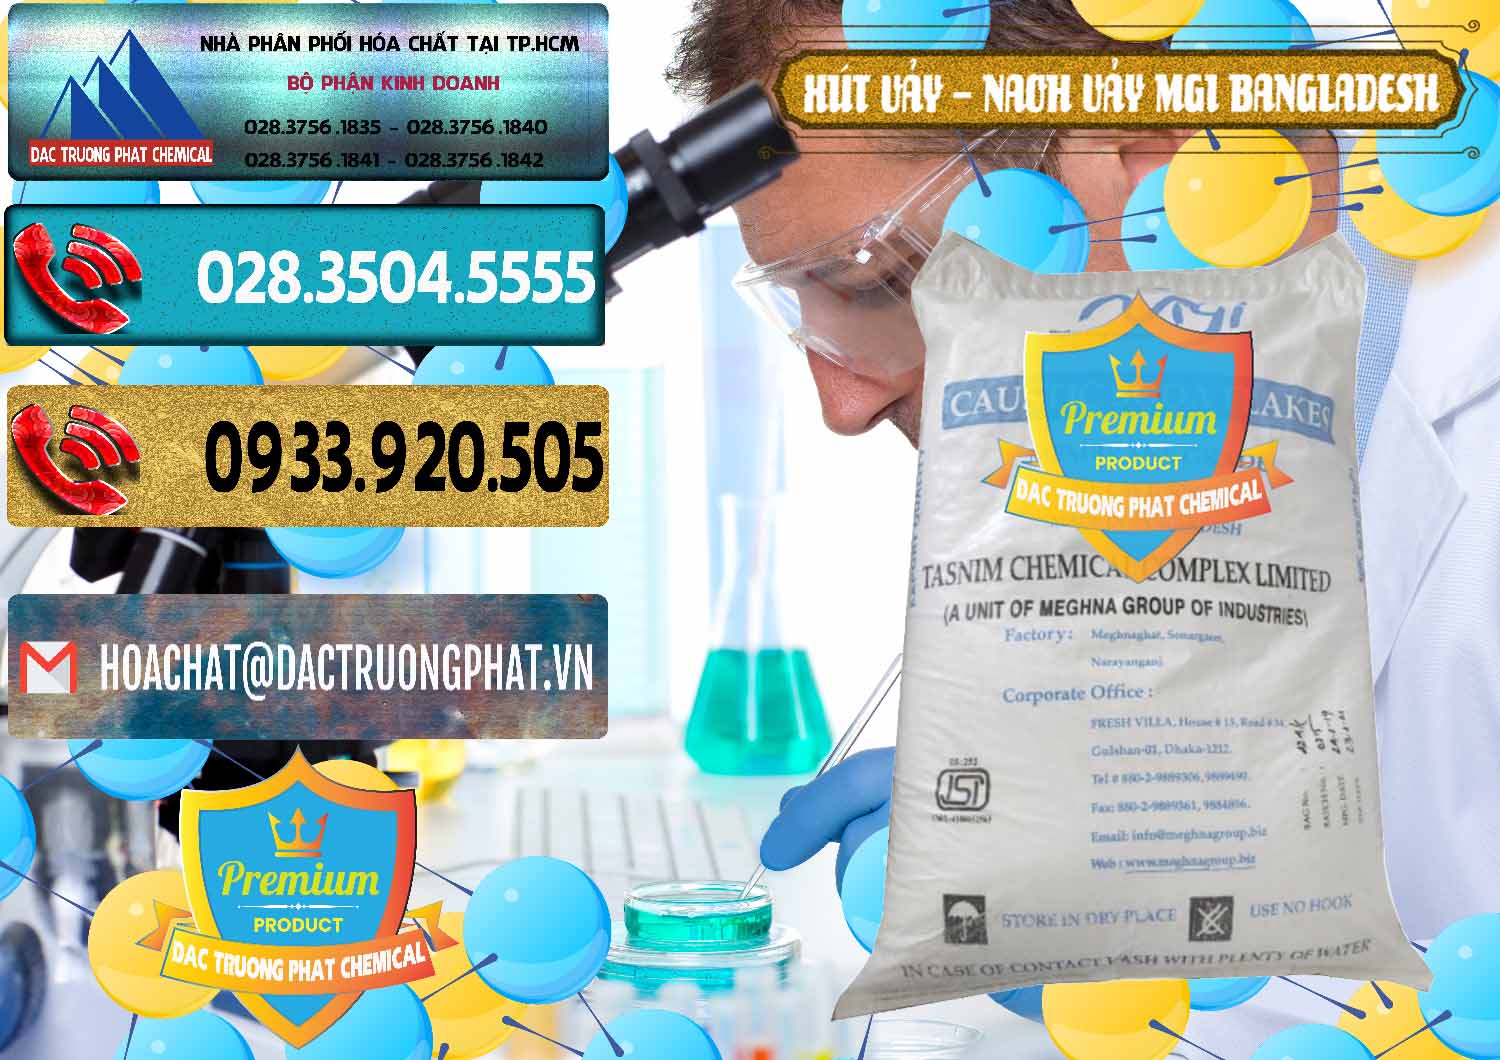 Cty chuyên kinh doanh _ bán Xút Vảy - NaOH Vảy 99% MGI Bangladesh - 0274 - Công ty chuyên phân phối và bán hóa chất tại TP.HCM - hoachatdetnhuom.com